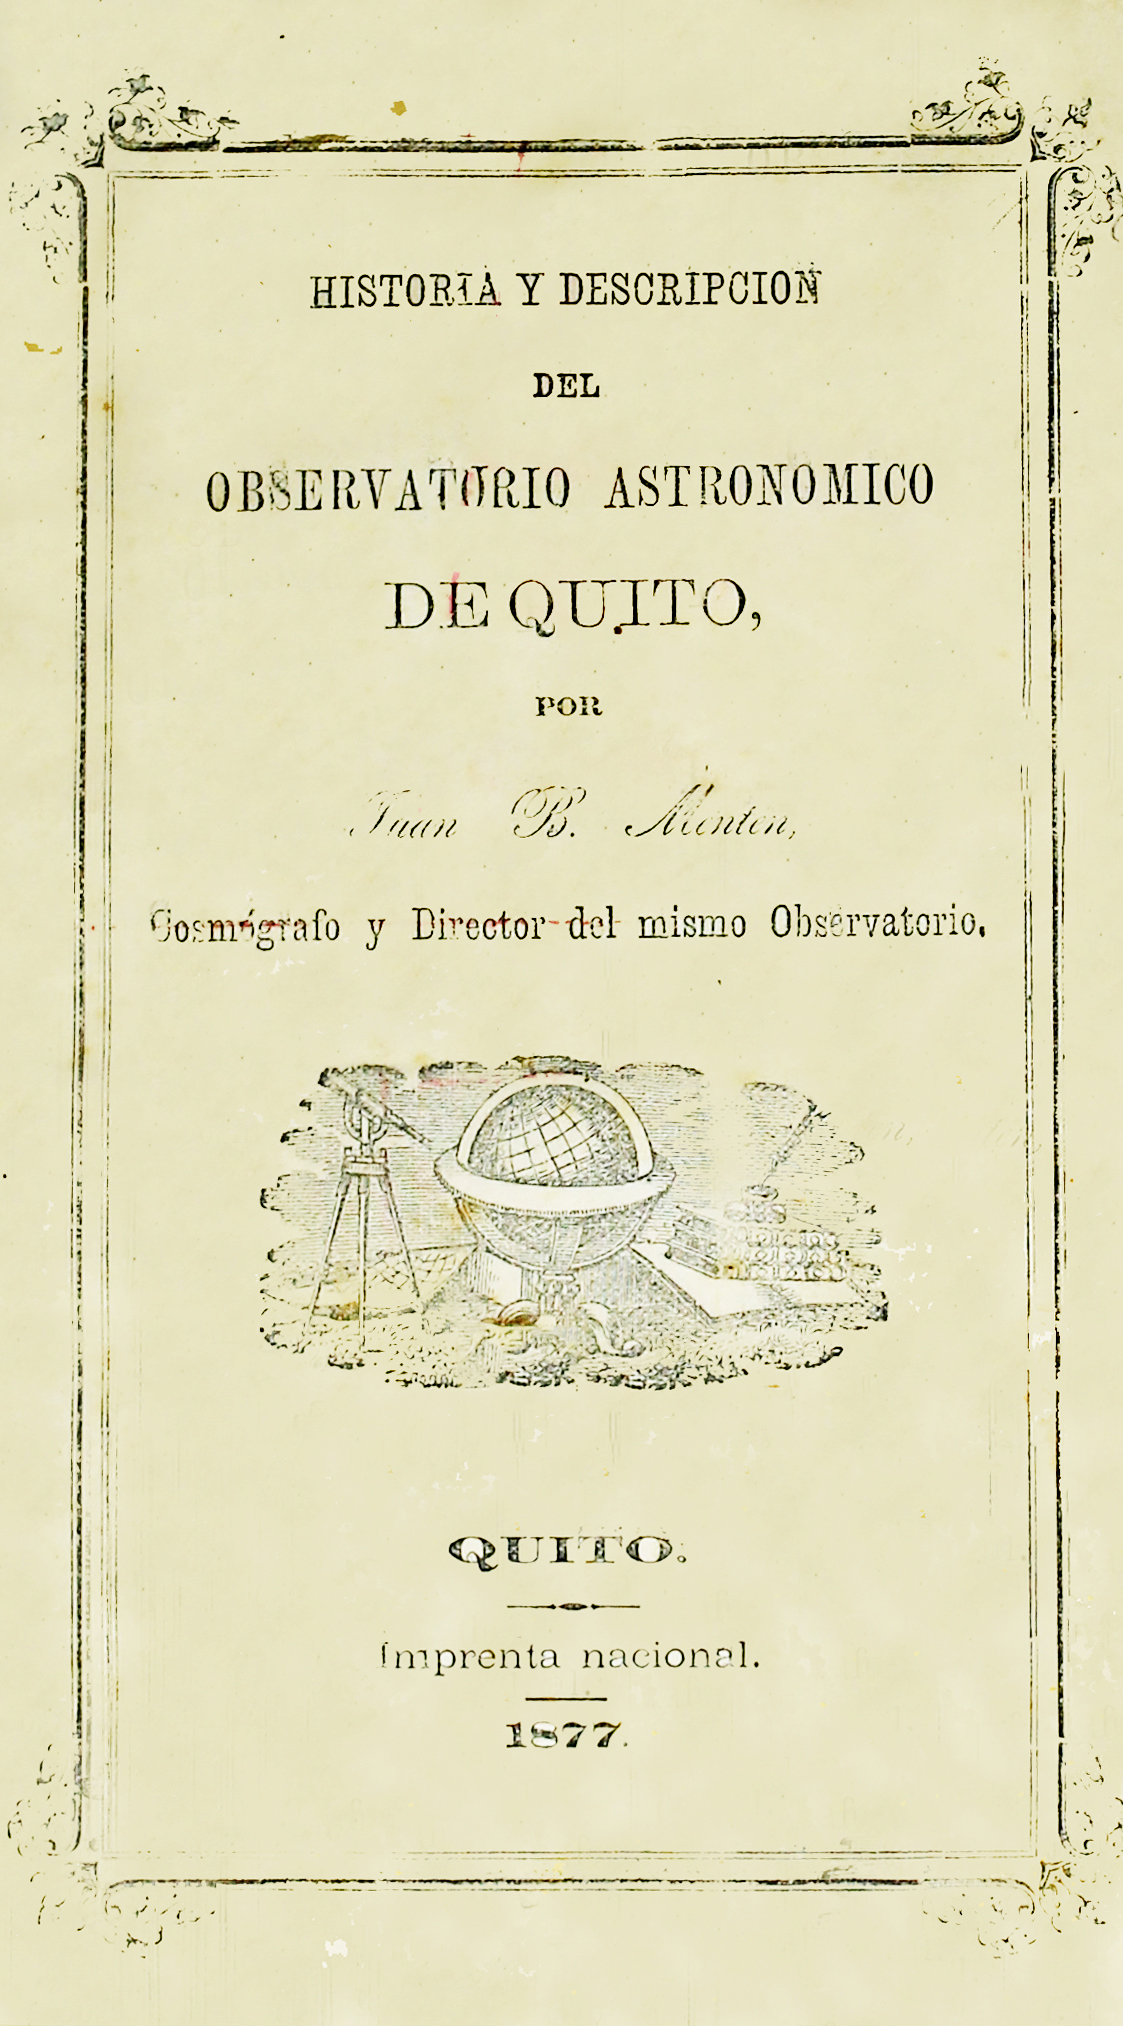 Historia y descripción del Observatorio Astronómico de Quito Por Juán B. Menten, cosmógrafo y Director del mismo Observatorio